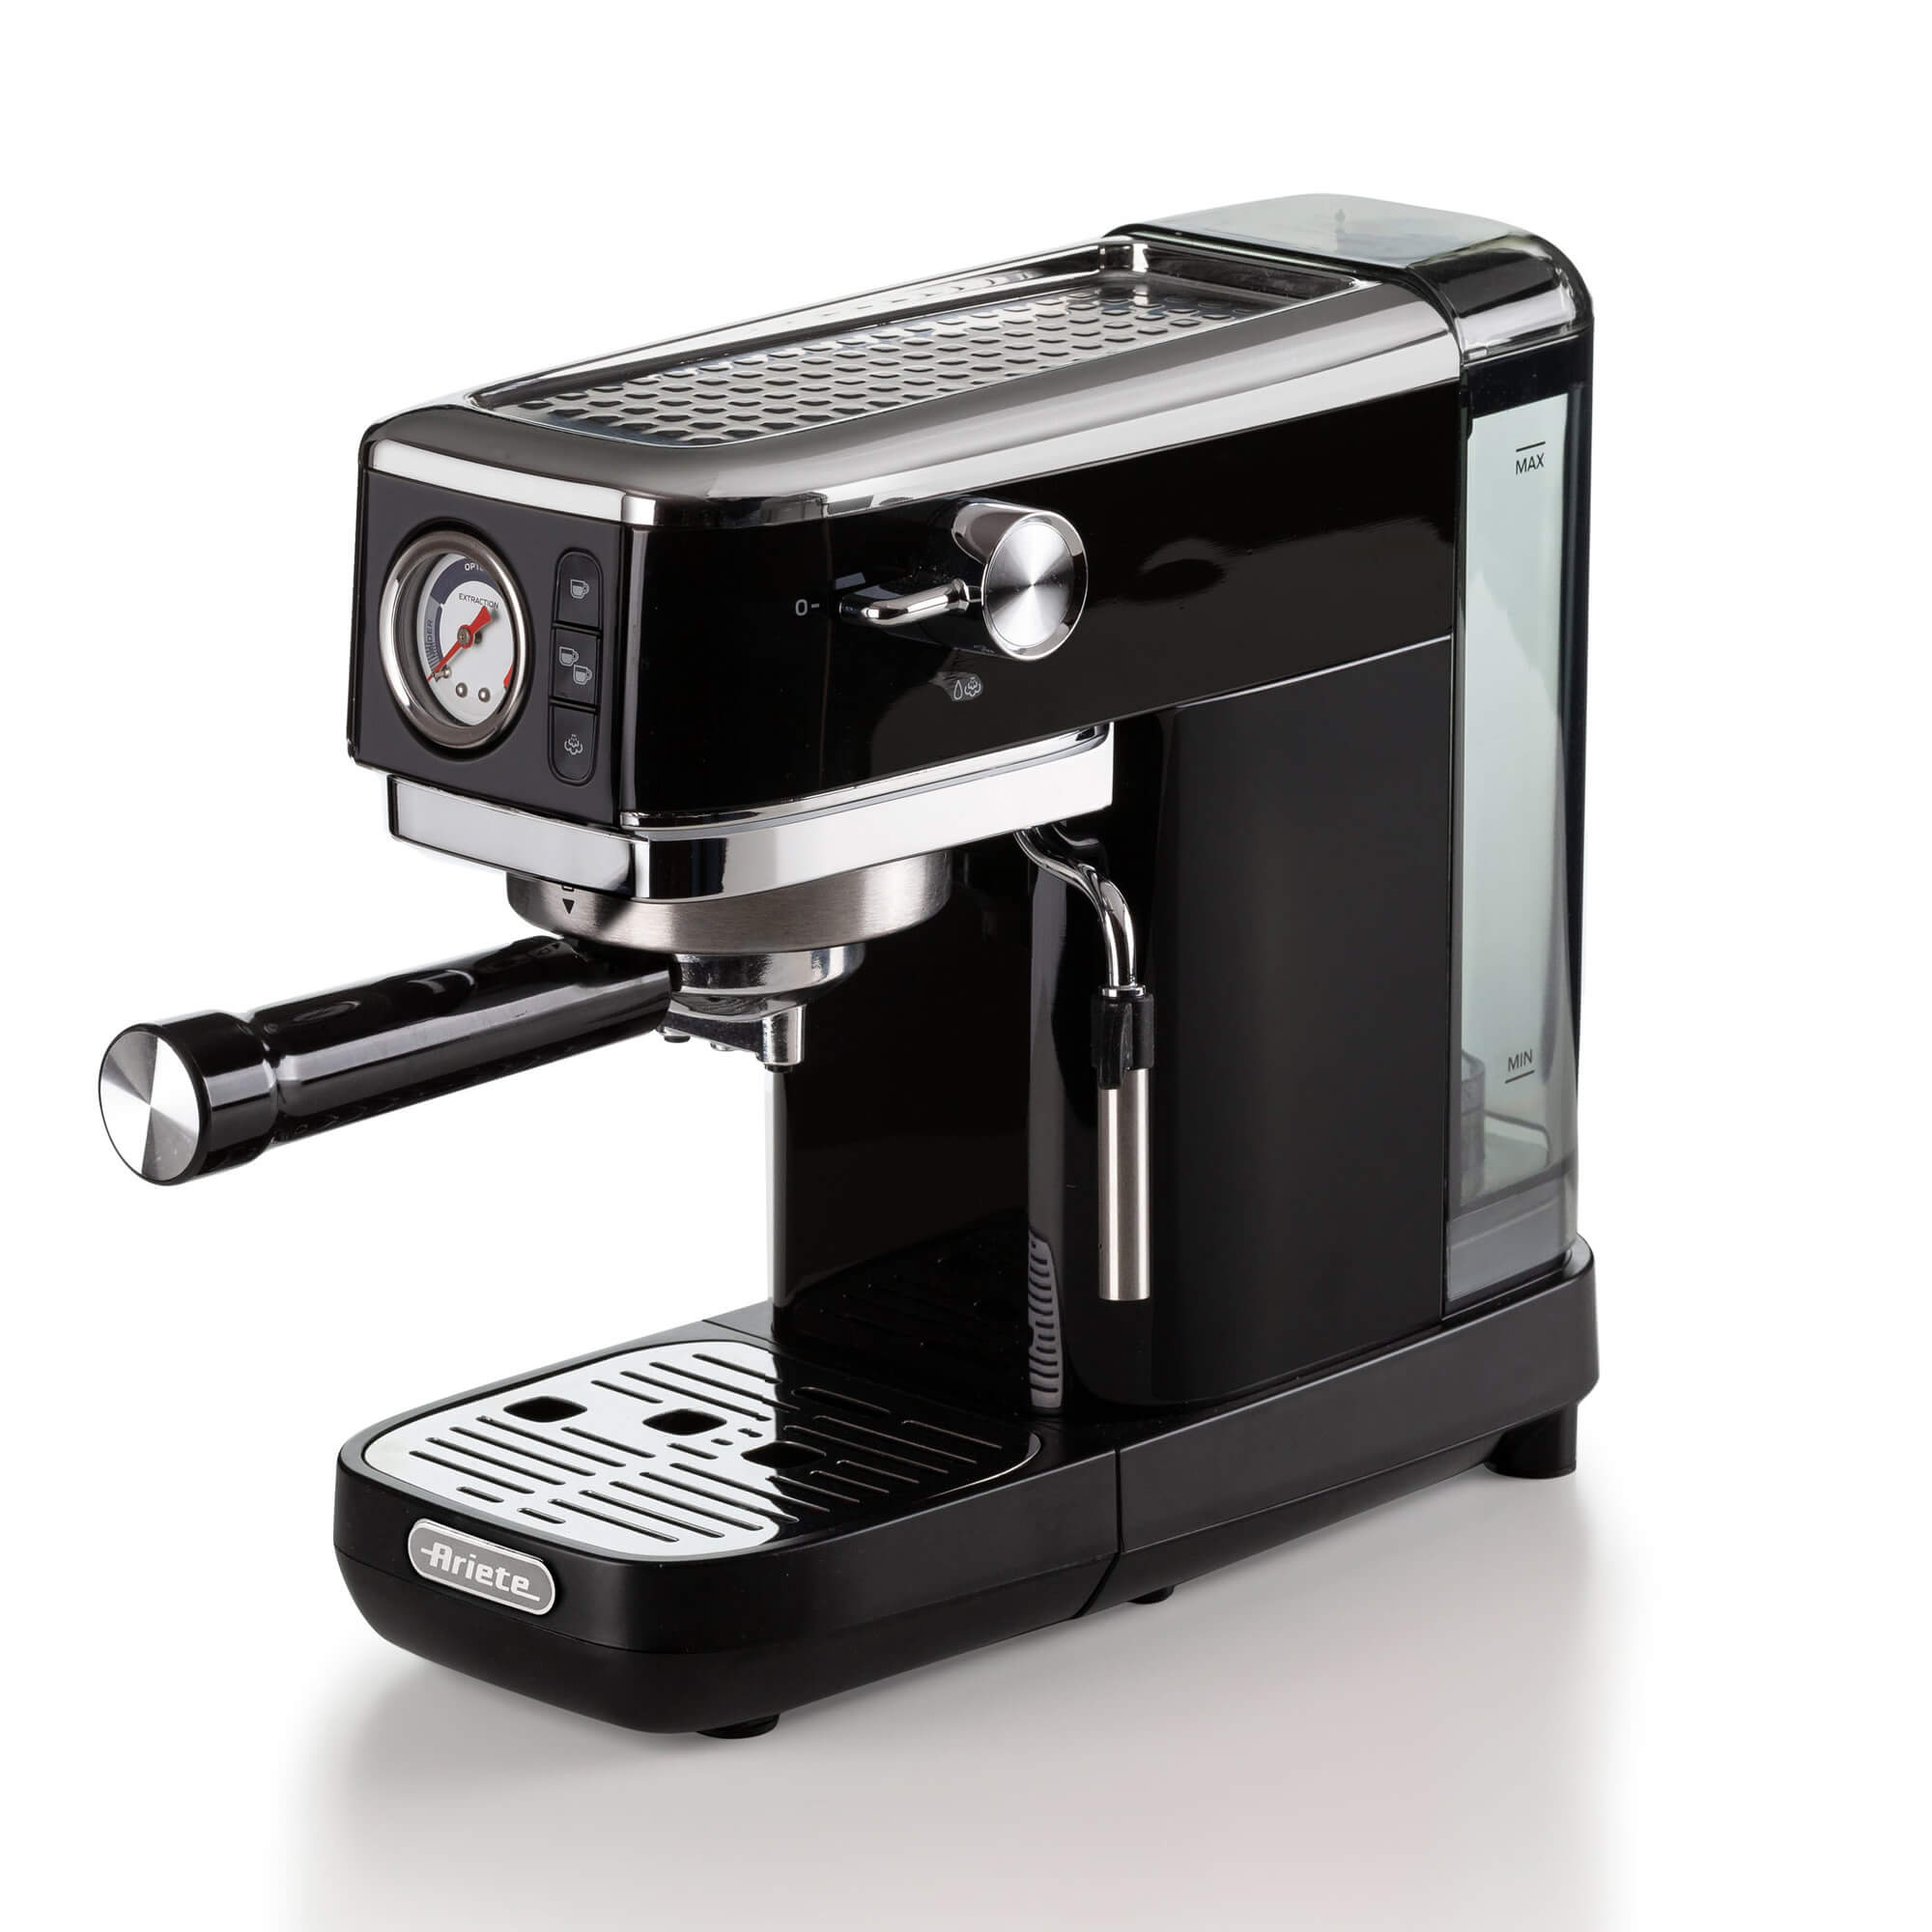 Immagine di  Ariete 1381 Macchina da caffè con manometro, compatibile con caffè in polvere e cialde ESE, 1300 W, Capacità 1,1 L, 15 bar di pressione, Filtro ½ tazze, Dispositivo Cappuccino, Nero